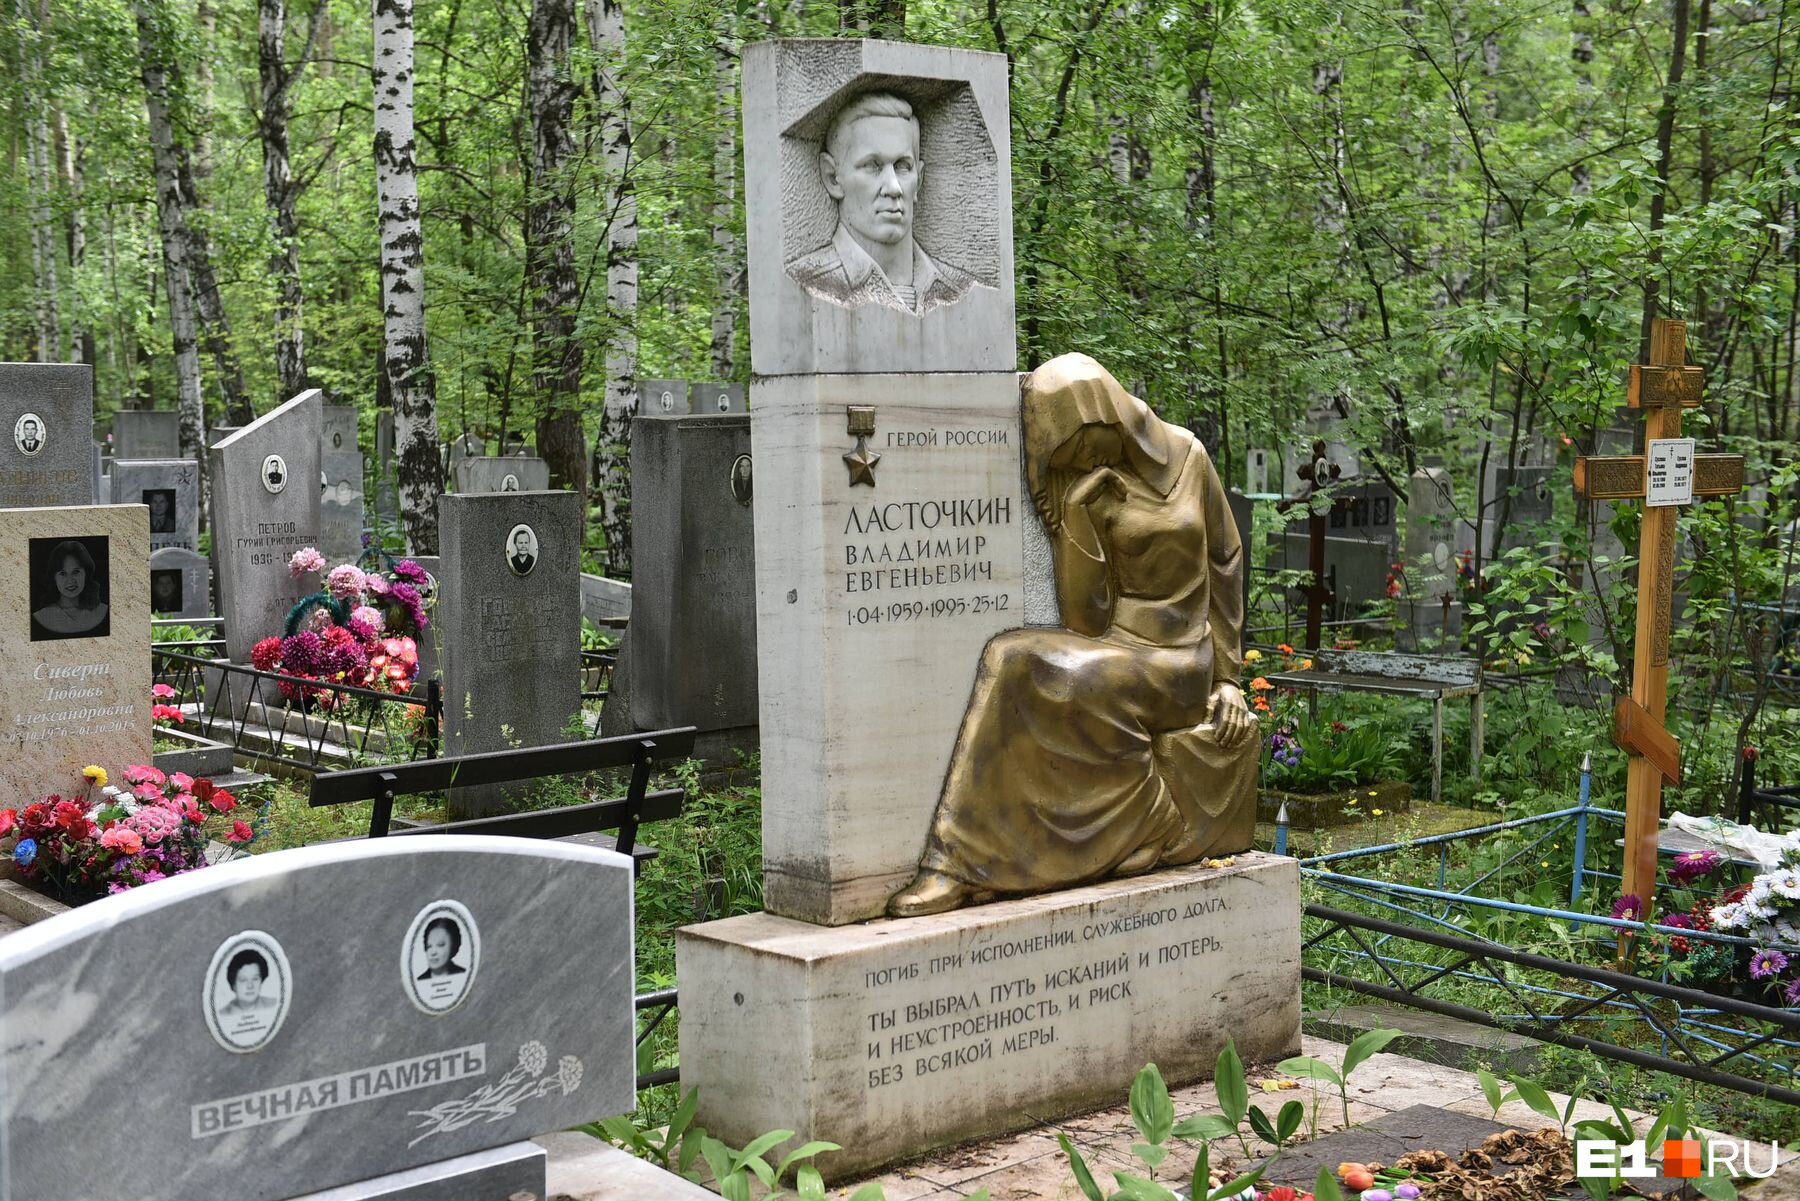 Рядом похоронен внук Кырчанова — Герой Российской Федерации Владимир Ласточкин